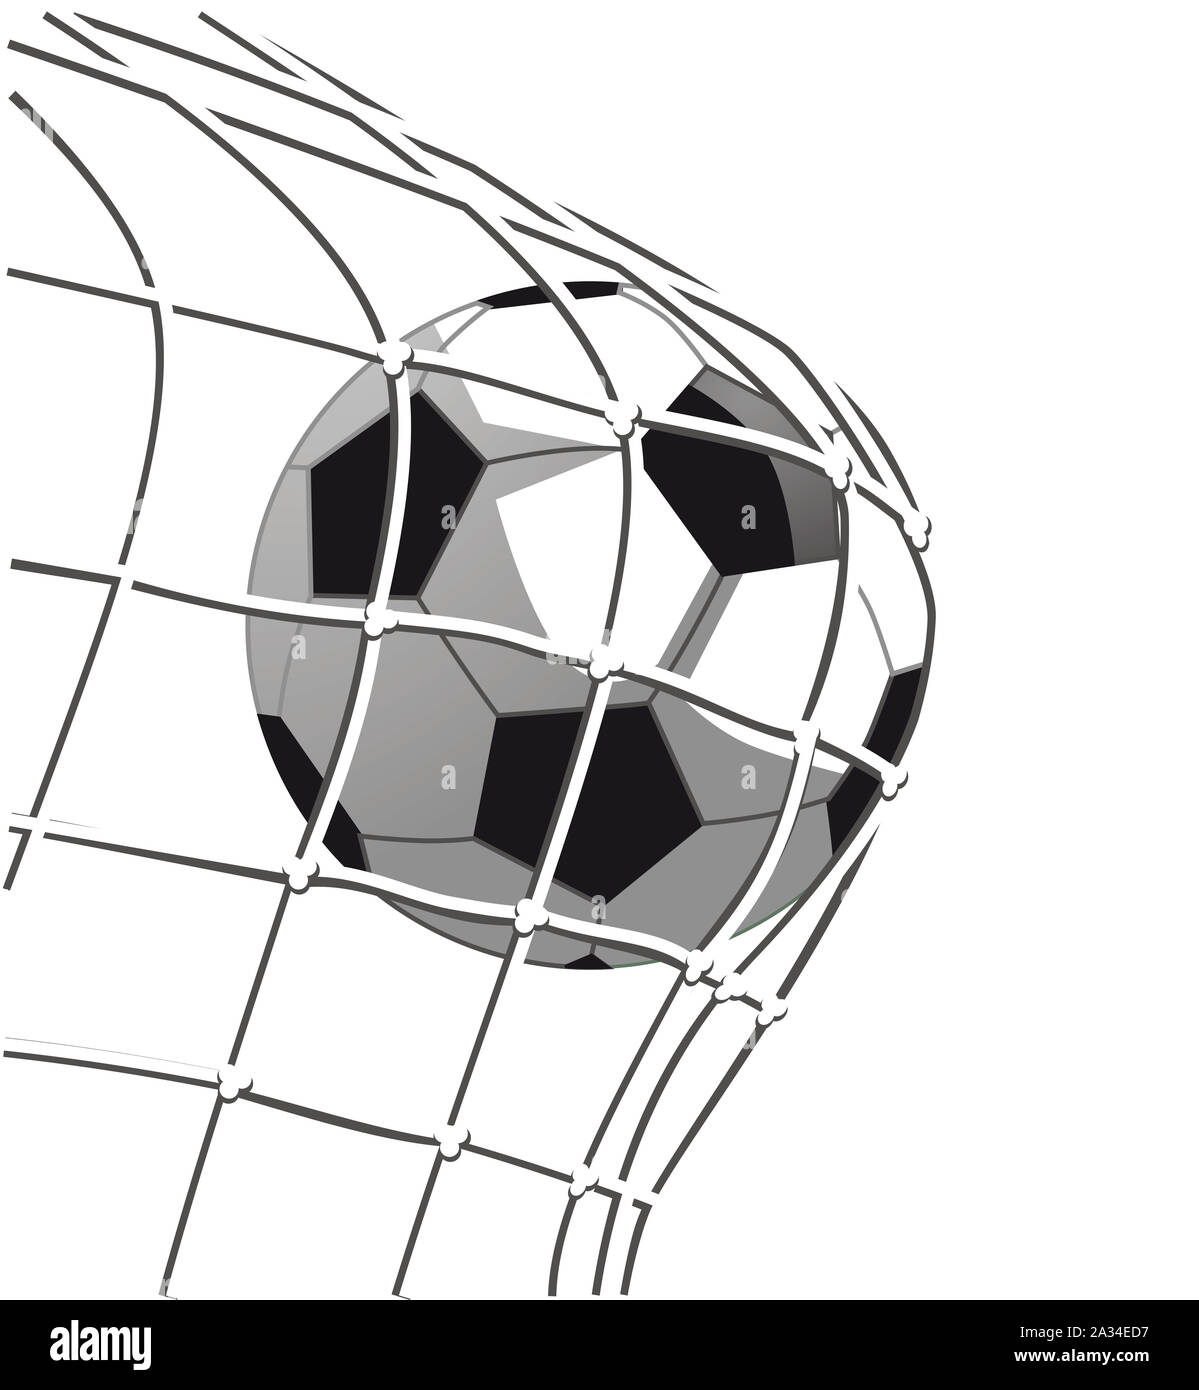 Soccer goal shot, goal on the soccer field, illustration Stock Photo